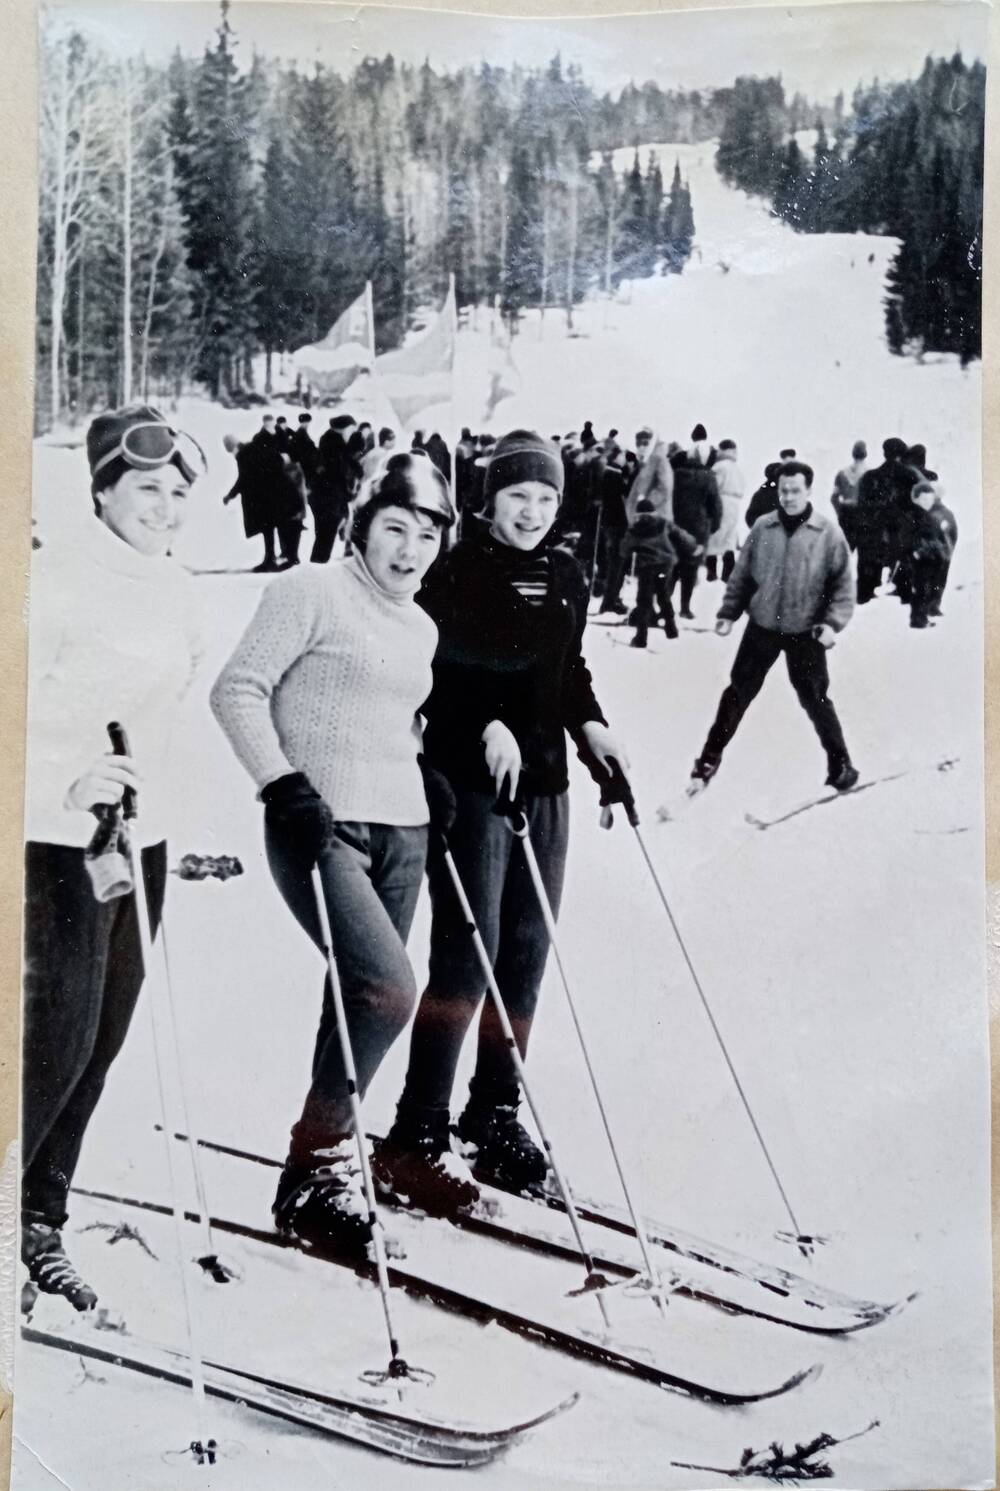 Фото из альбома по истории развития лыжного спорта в Н. Тагиле с 1926 года. Одни из первых горнолыжниц посёлка Уралец – Таня Могильникова, Галя Зорина и Галя Воробьева.